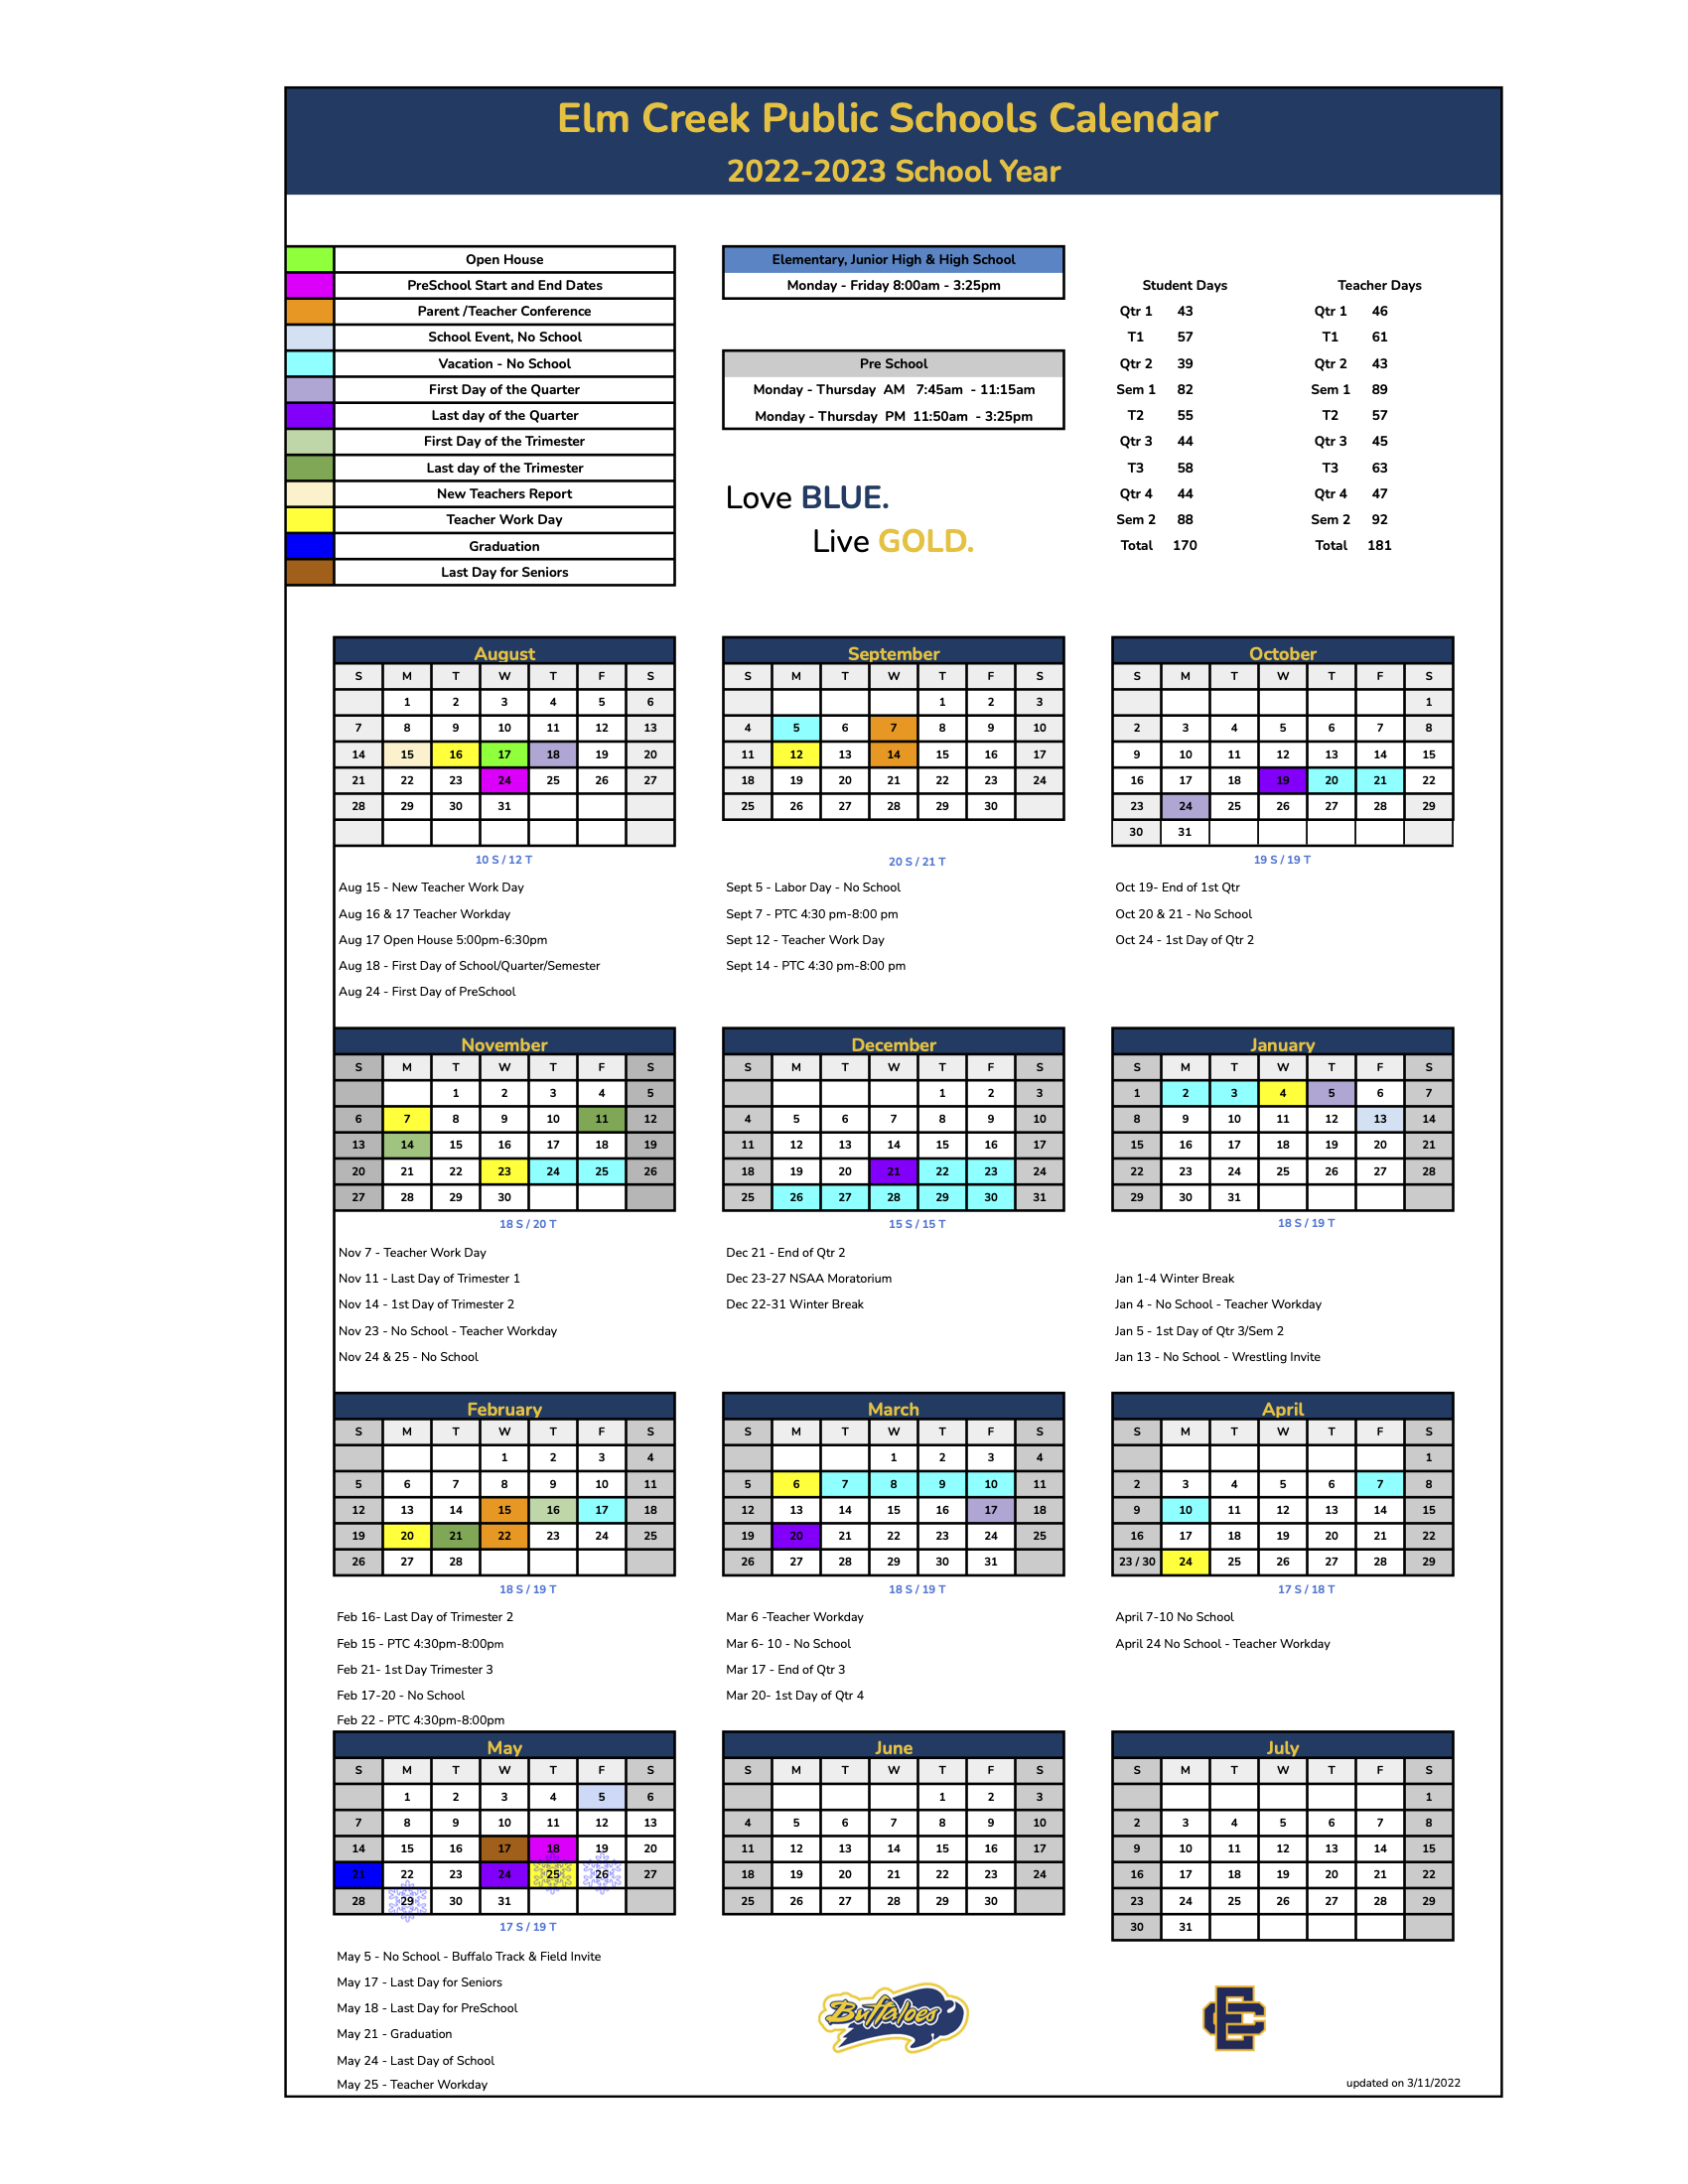 Elm Creek Public Schools Calendar 2022 and 2023 - PublicHolidays.com